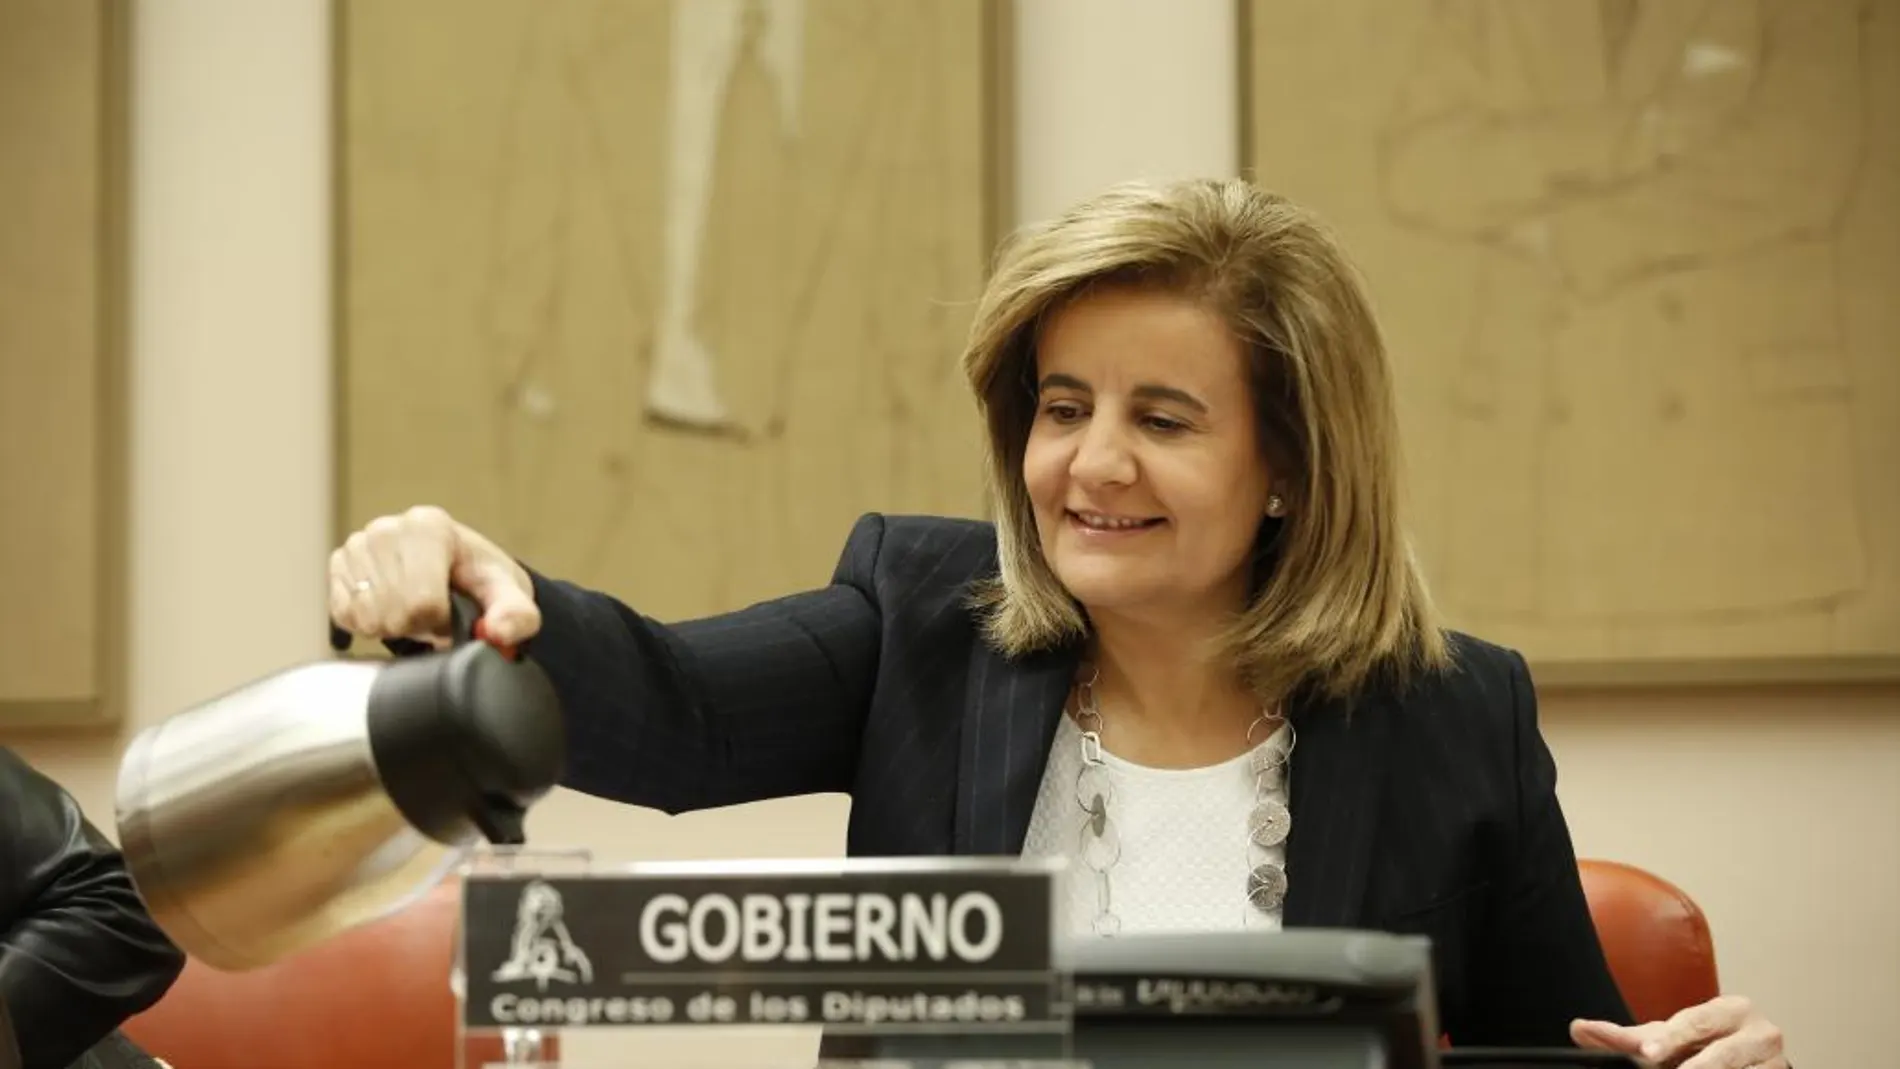 La ministra de Empleo, Fátima Báñez, compareció ayer en la comisión del Pacto de Toledo pa